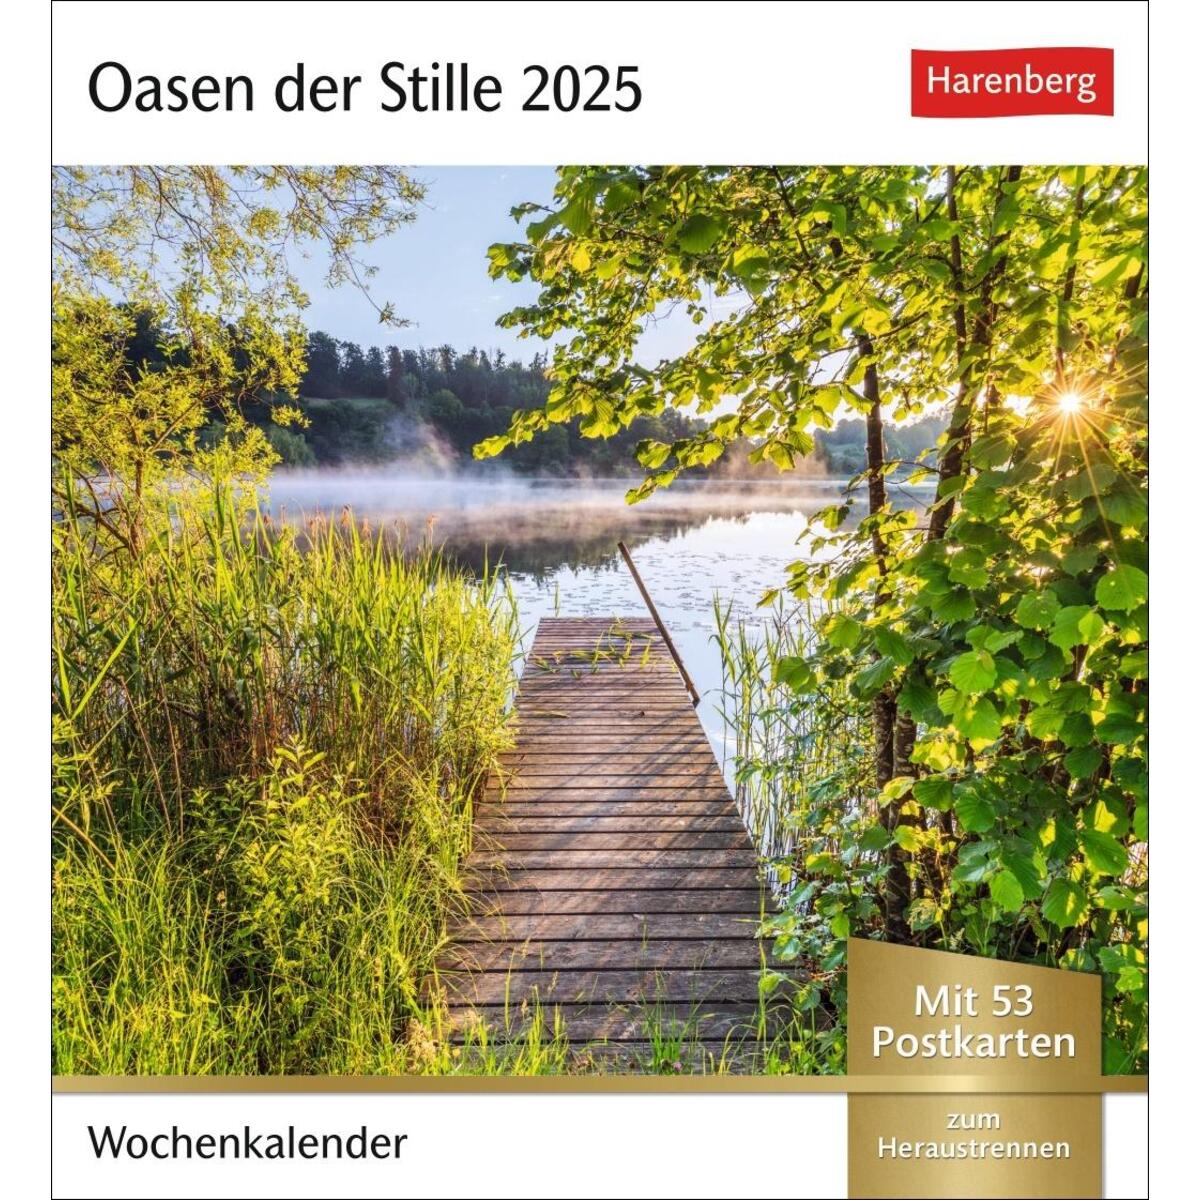 Oasen der Stille Postkartenkalender 2025 - Wochenkalender mit 53 Postkarten von Harenberg